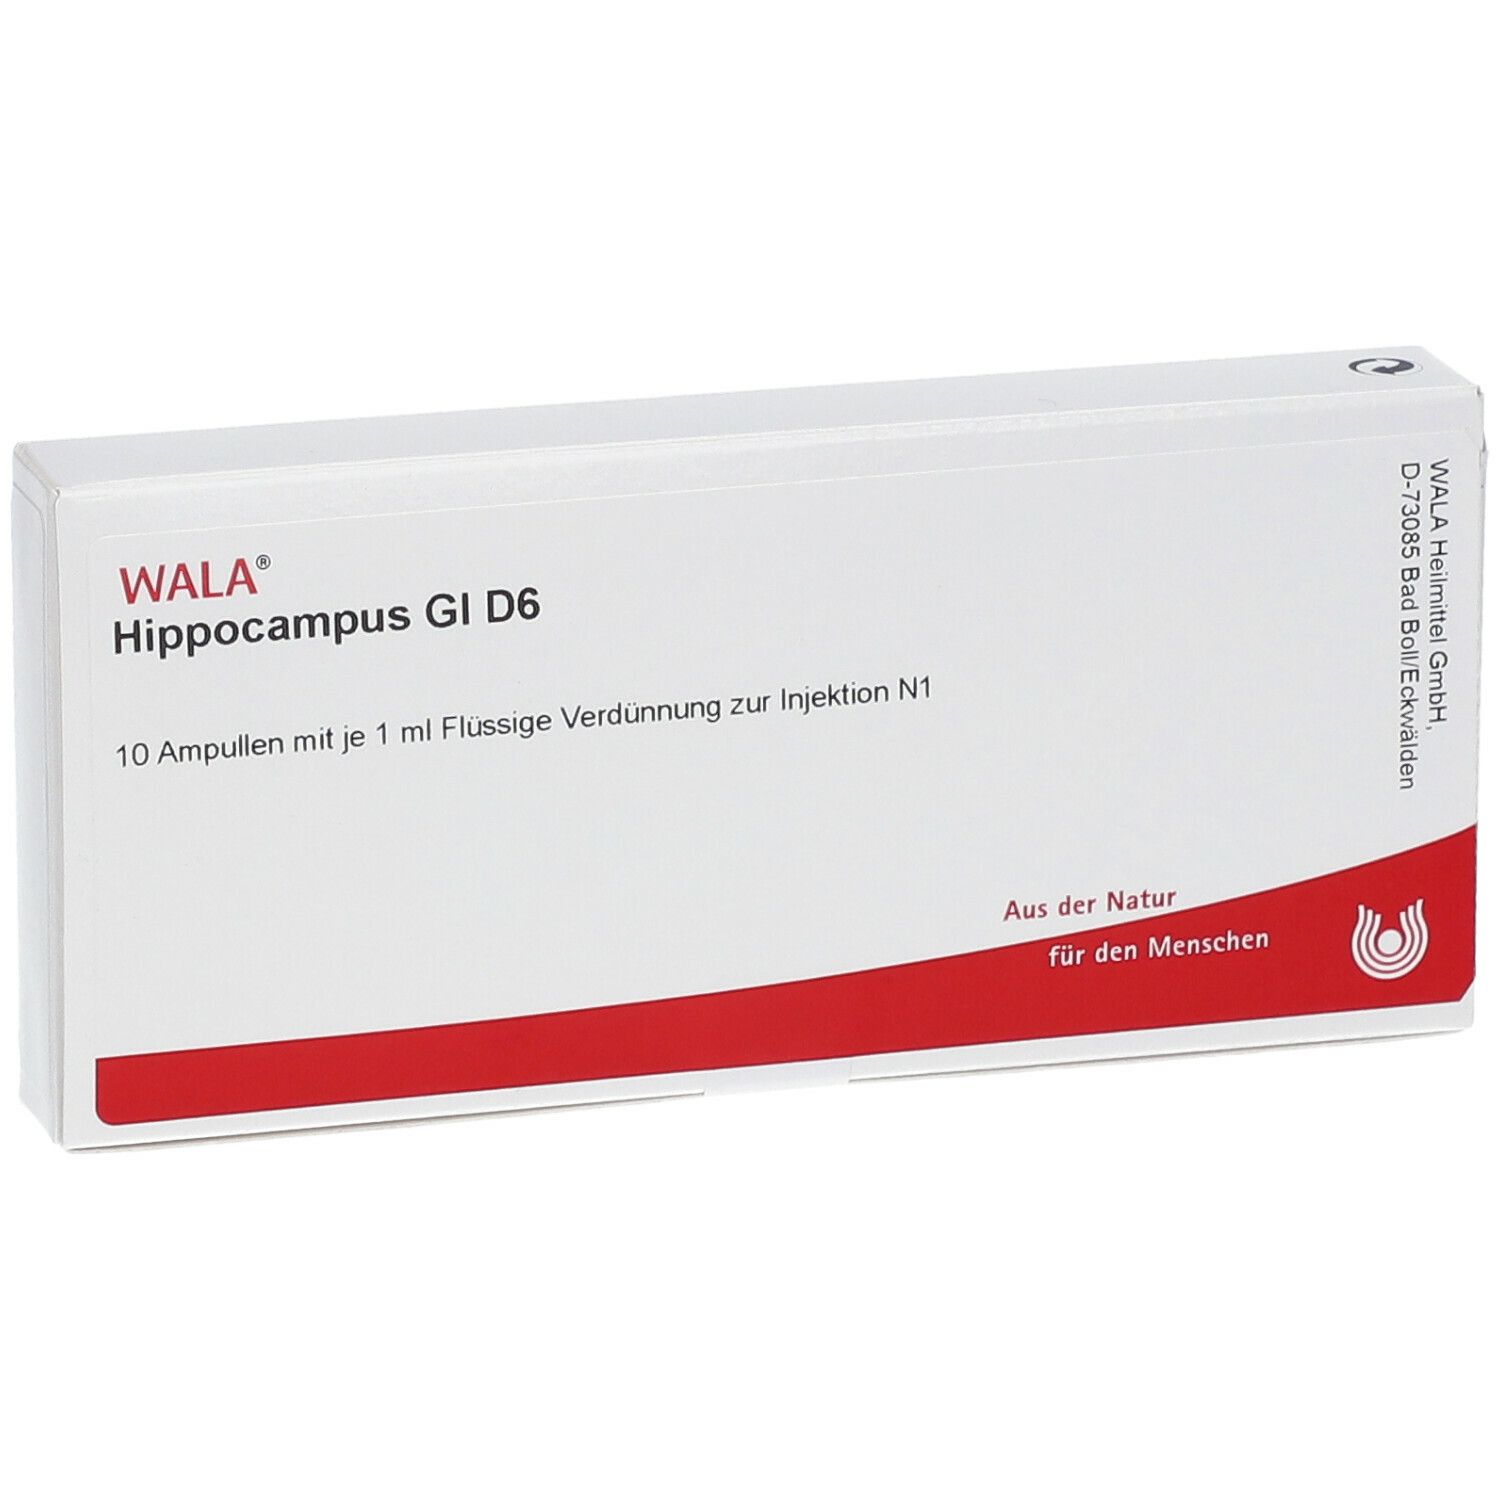 WALA® Hippocampus Gl D 6